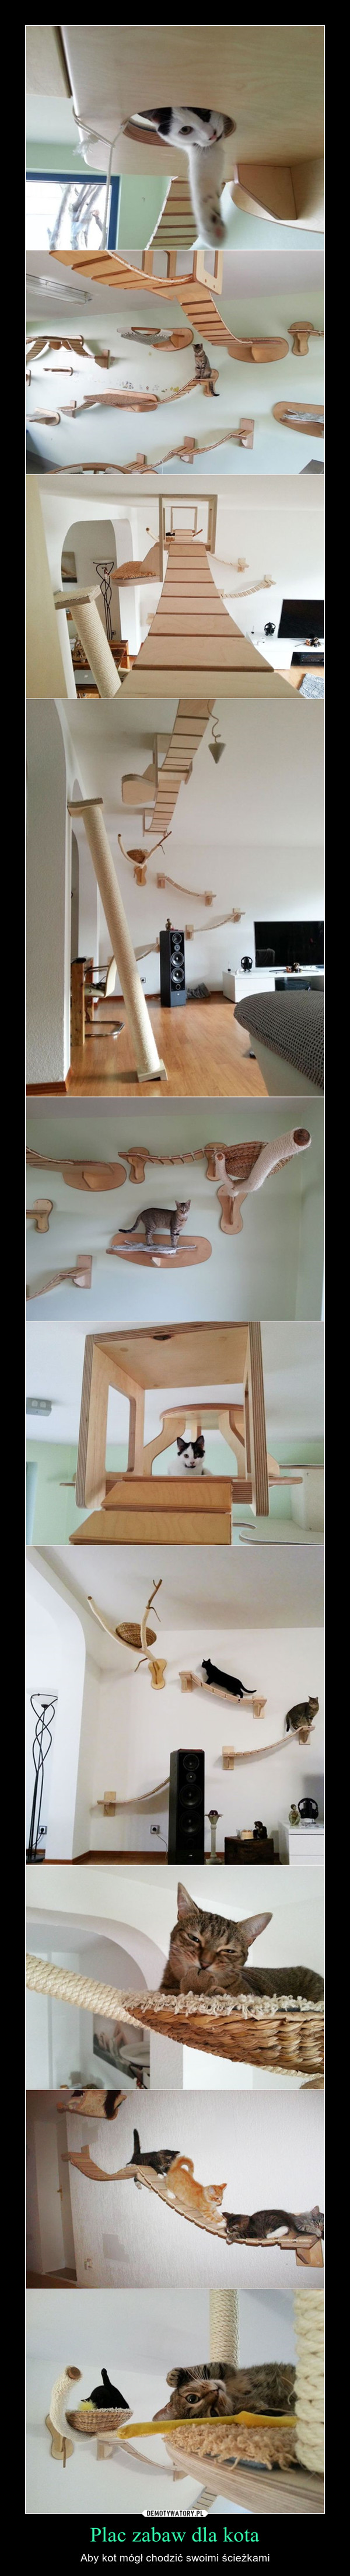 Plac zabaw dla kota – Aby kot mógł chodzić swoimi ścieżkami 